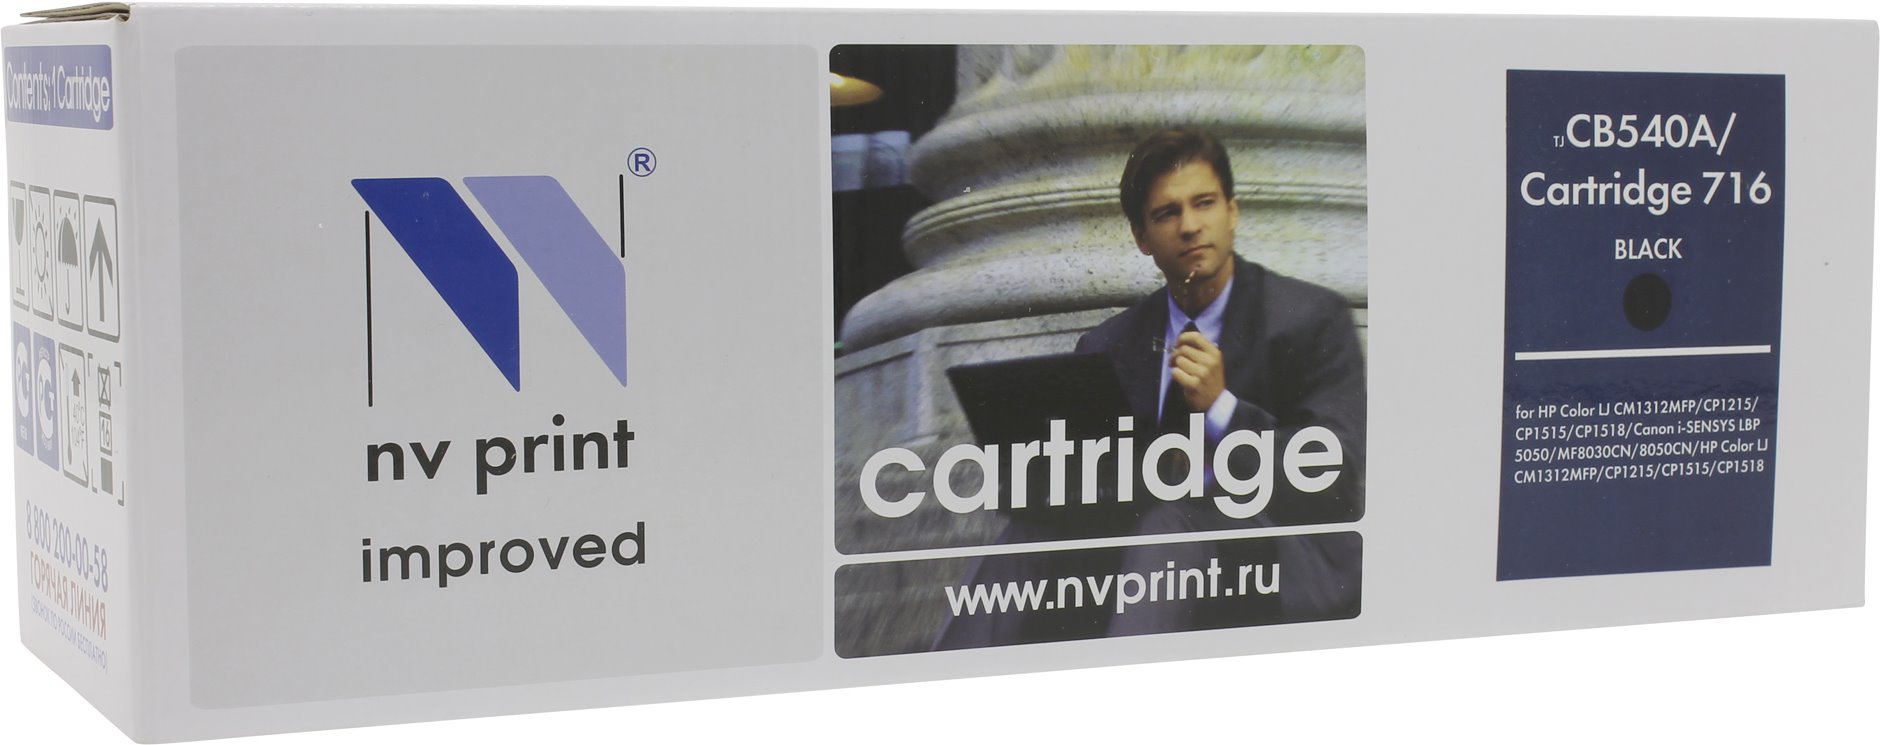   NV-Print  HP Color LaserJet CP1215/1515/ CM1312 Black, CB540A